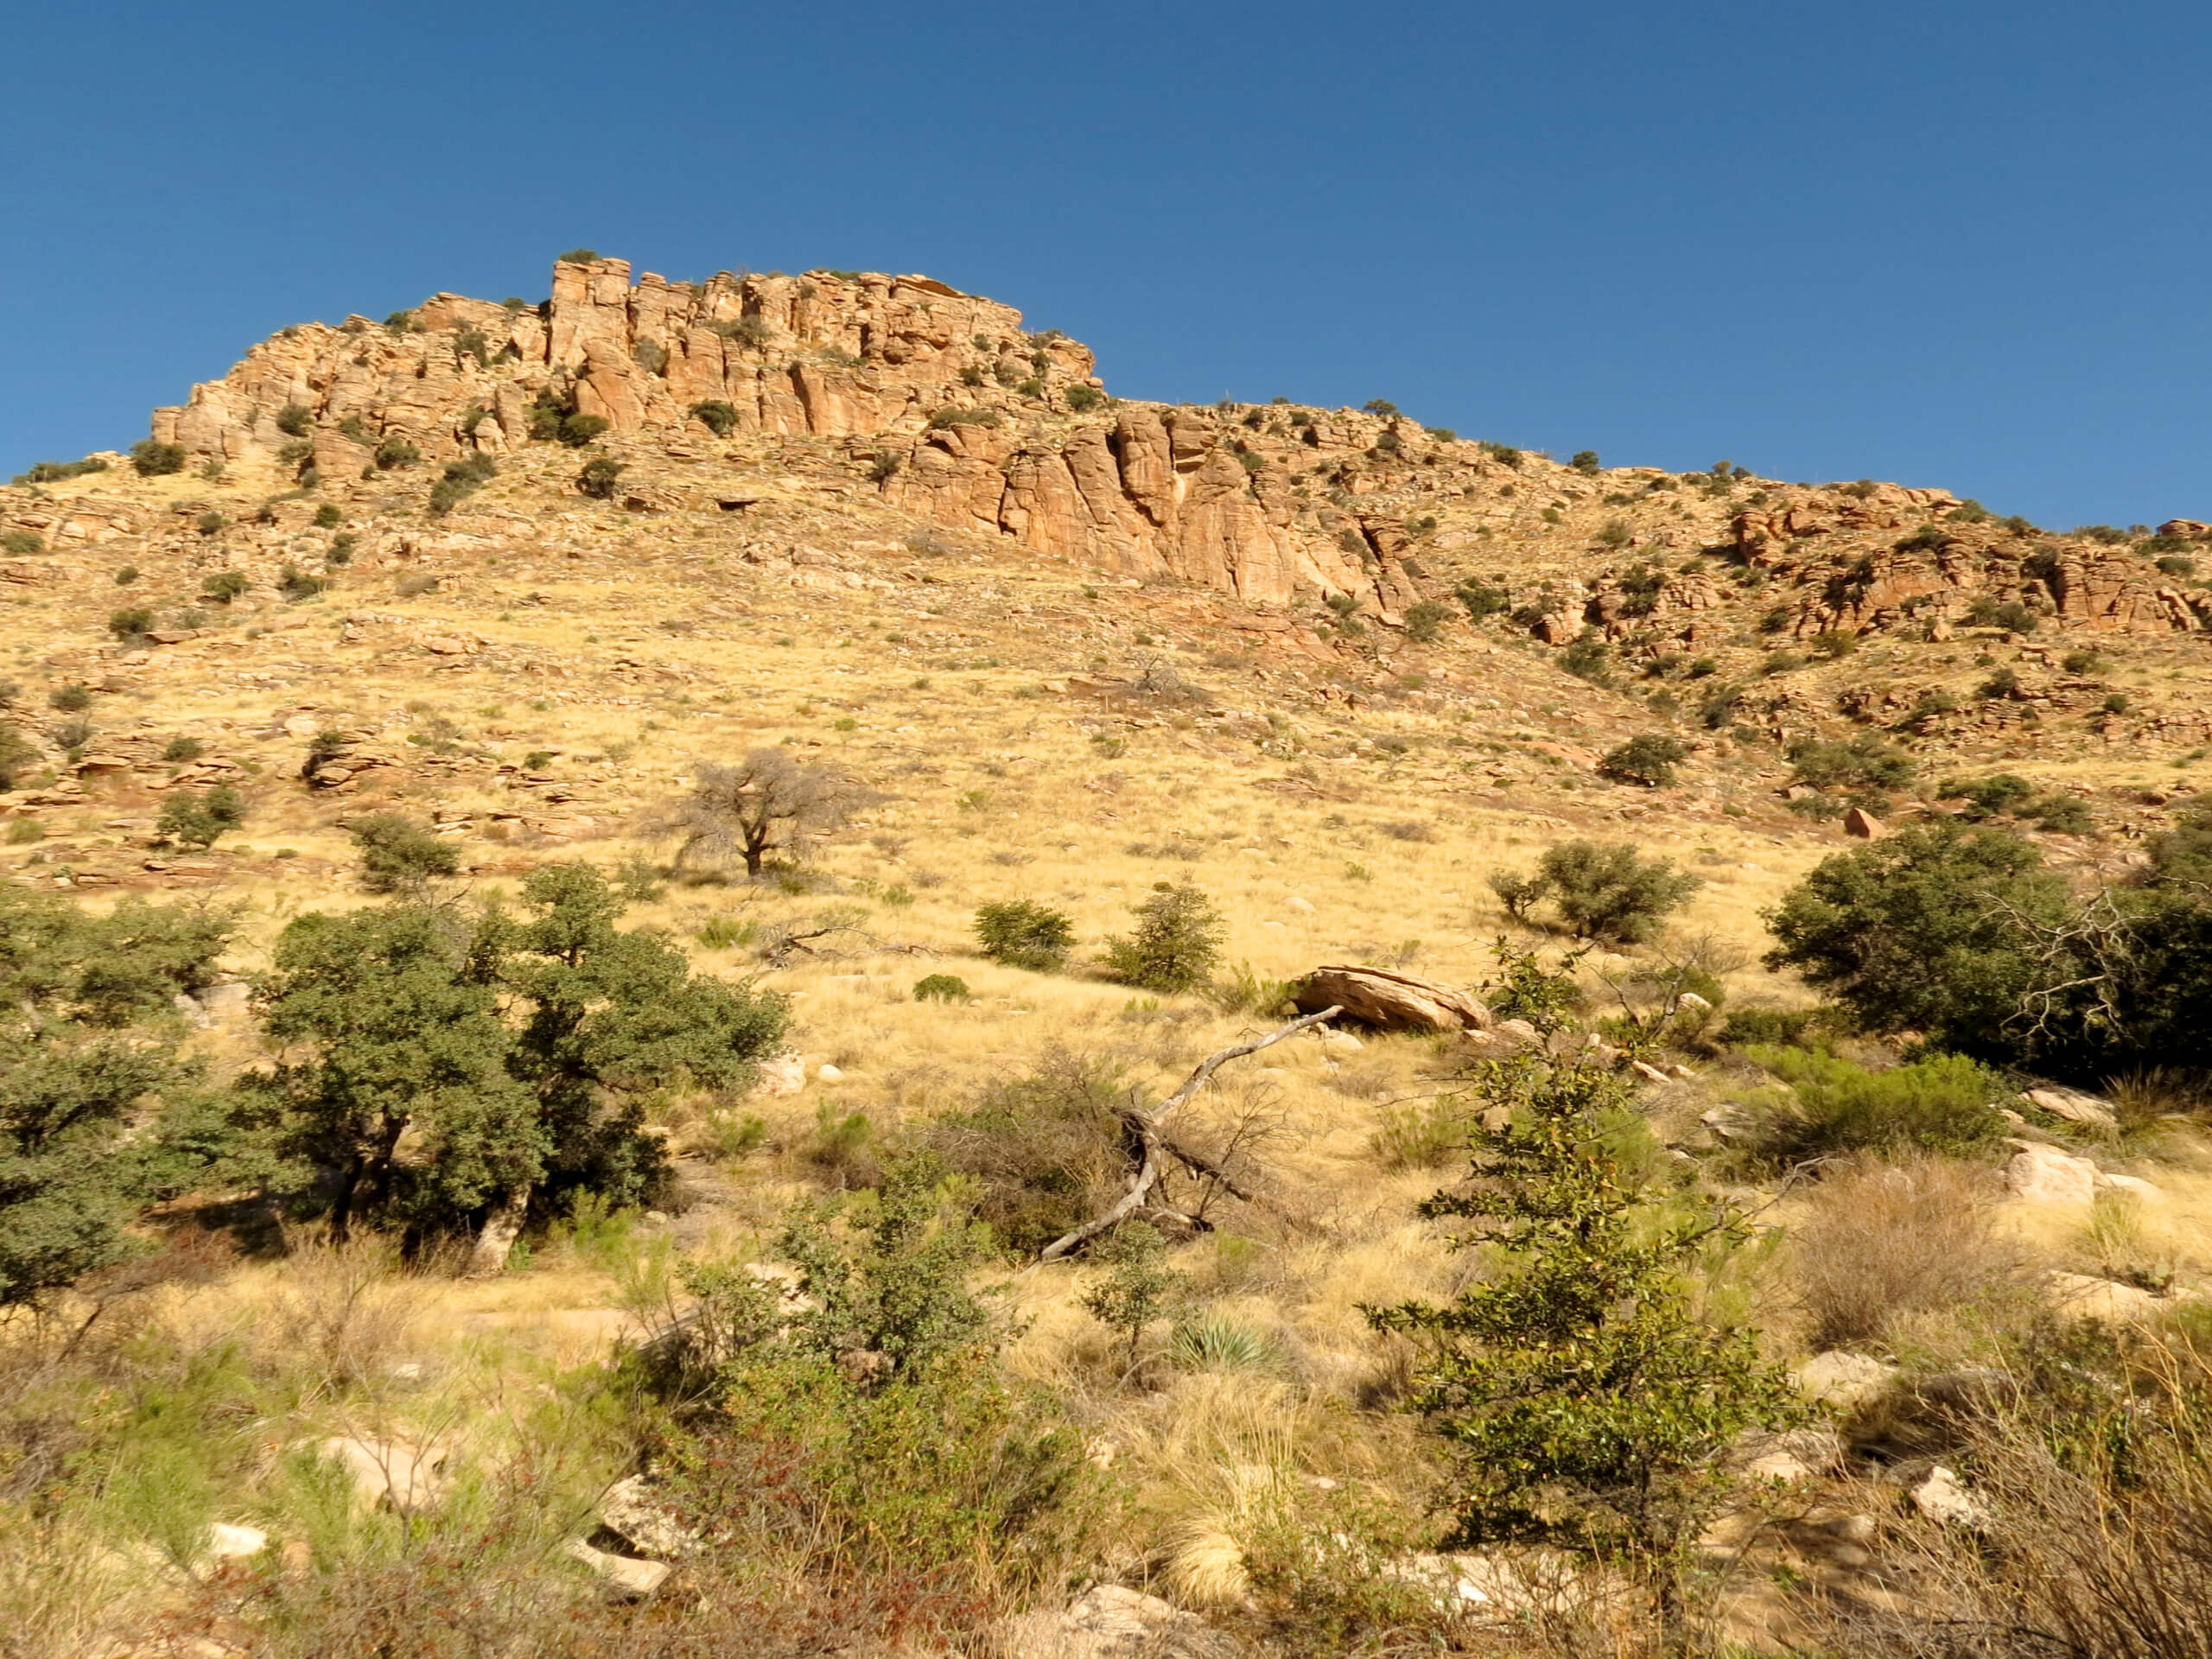 Molino Basin via Arizona Trail